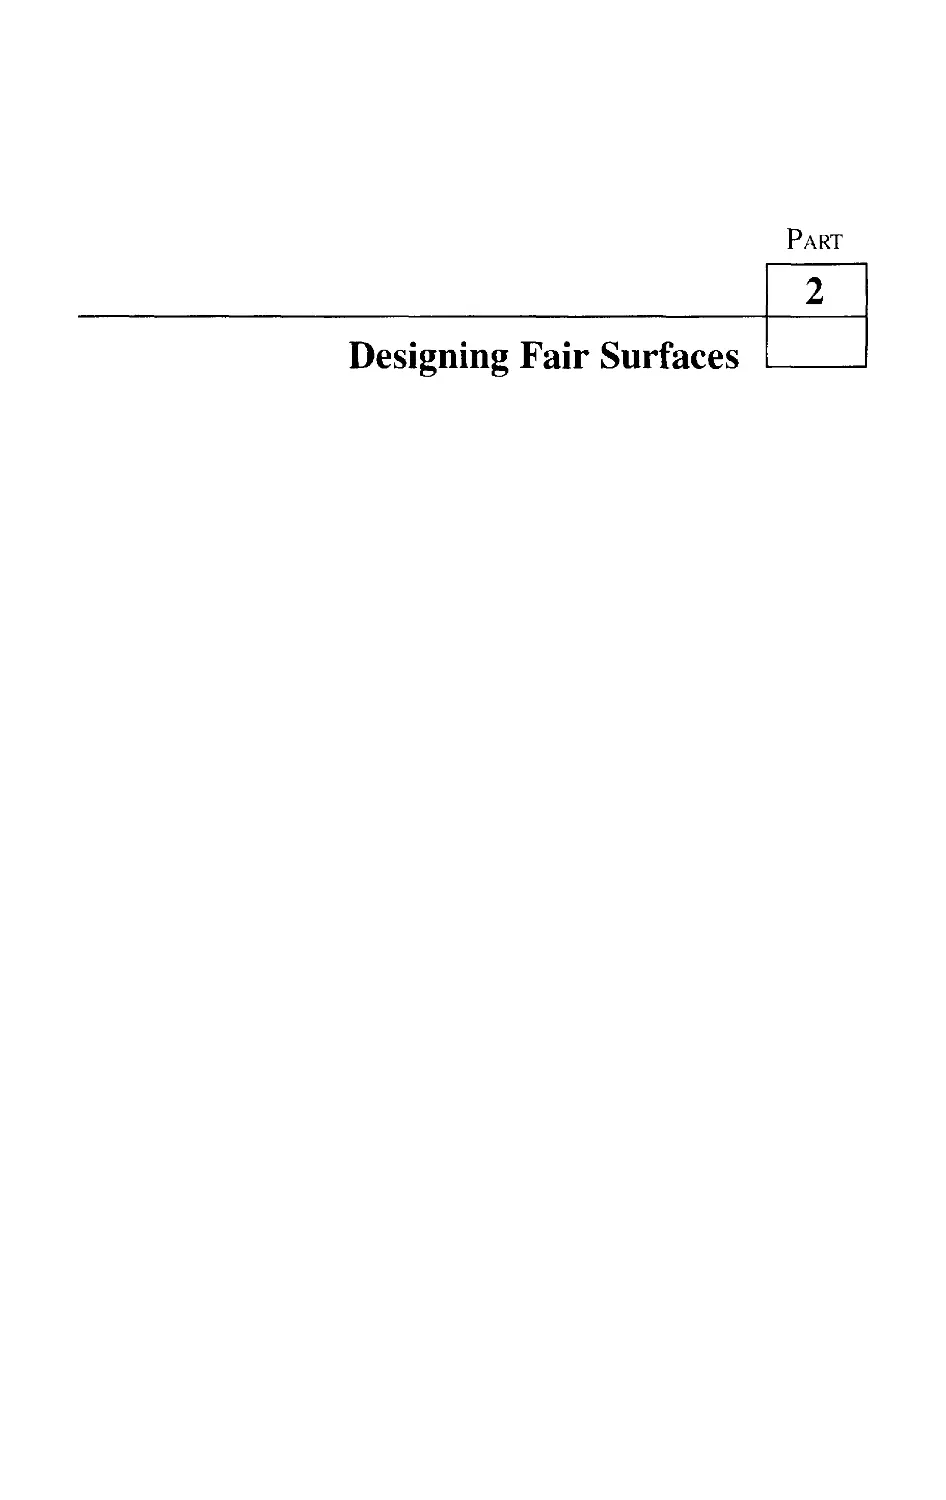 PART 2 Designing Fair Surfaces